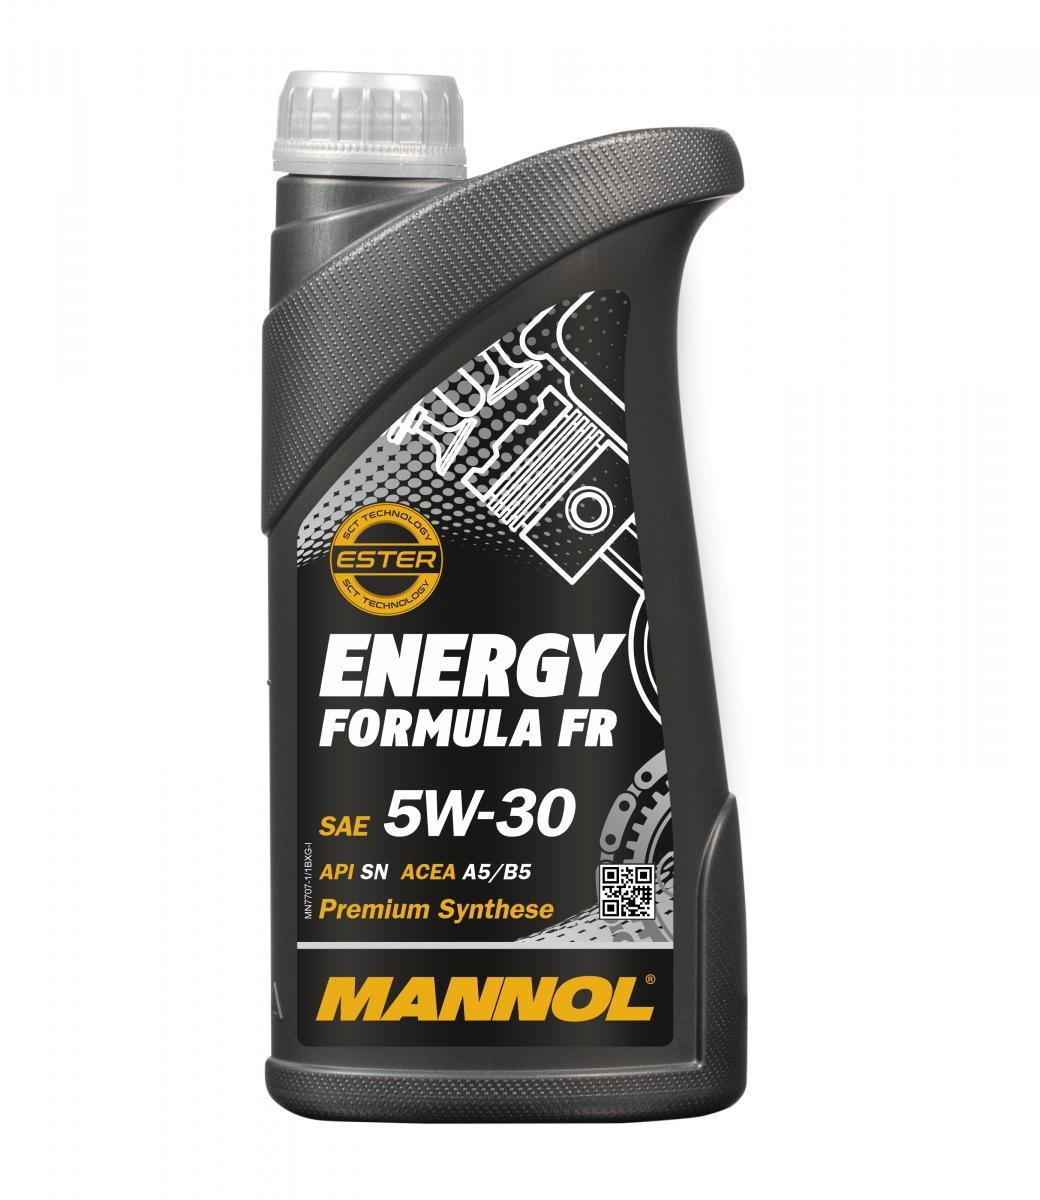 MANNOL MN7707-1 Moottoriöljy 5W-30, 1l, Synteettinen öljy Opel alkuperäistä laatua